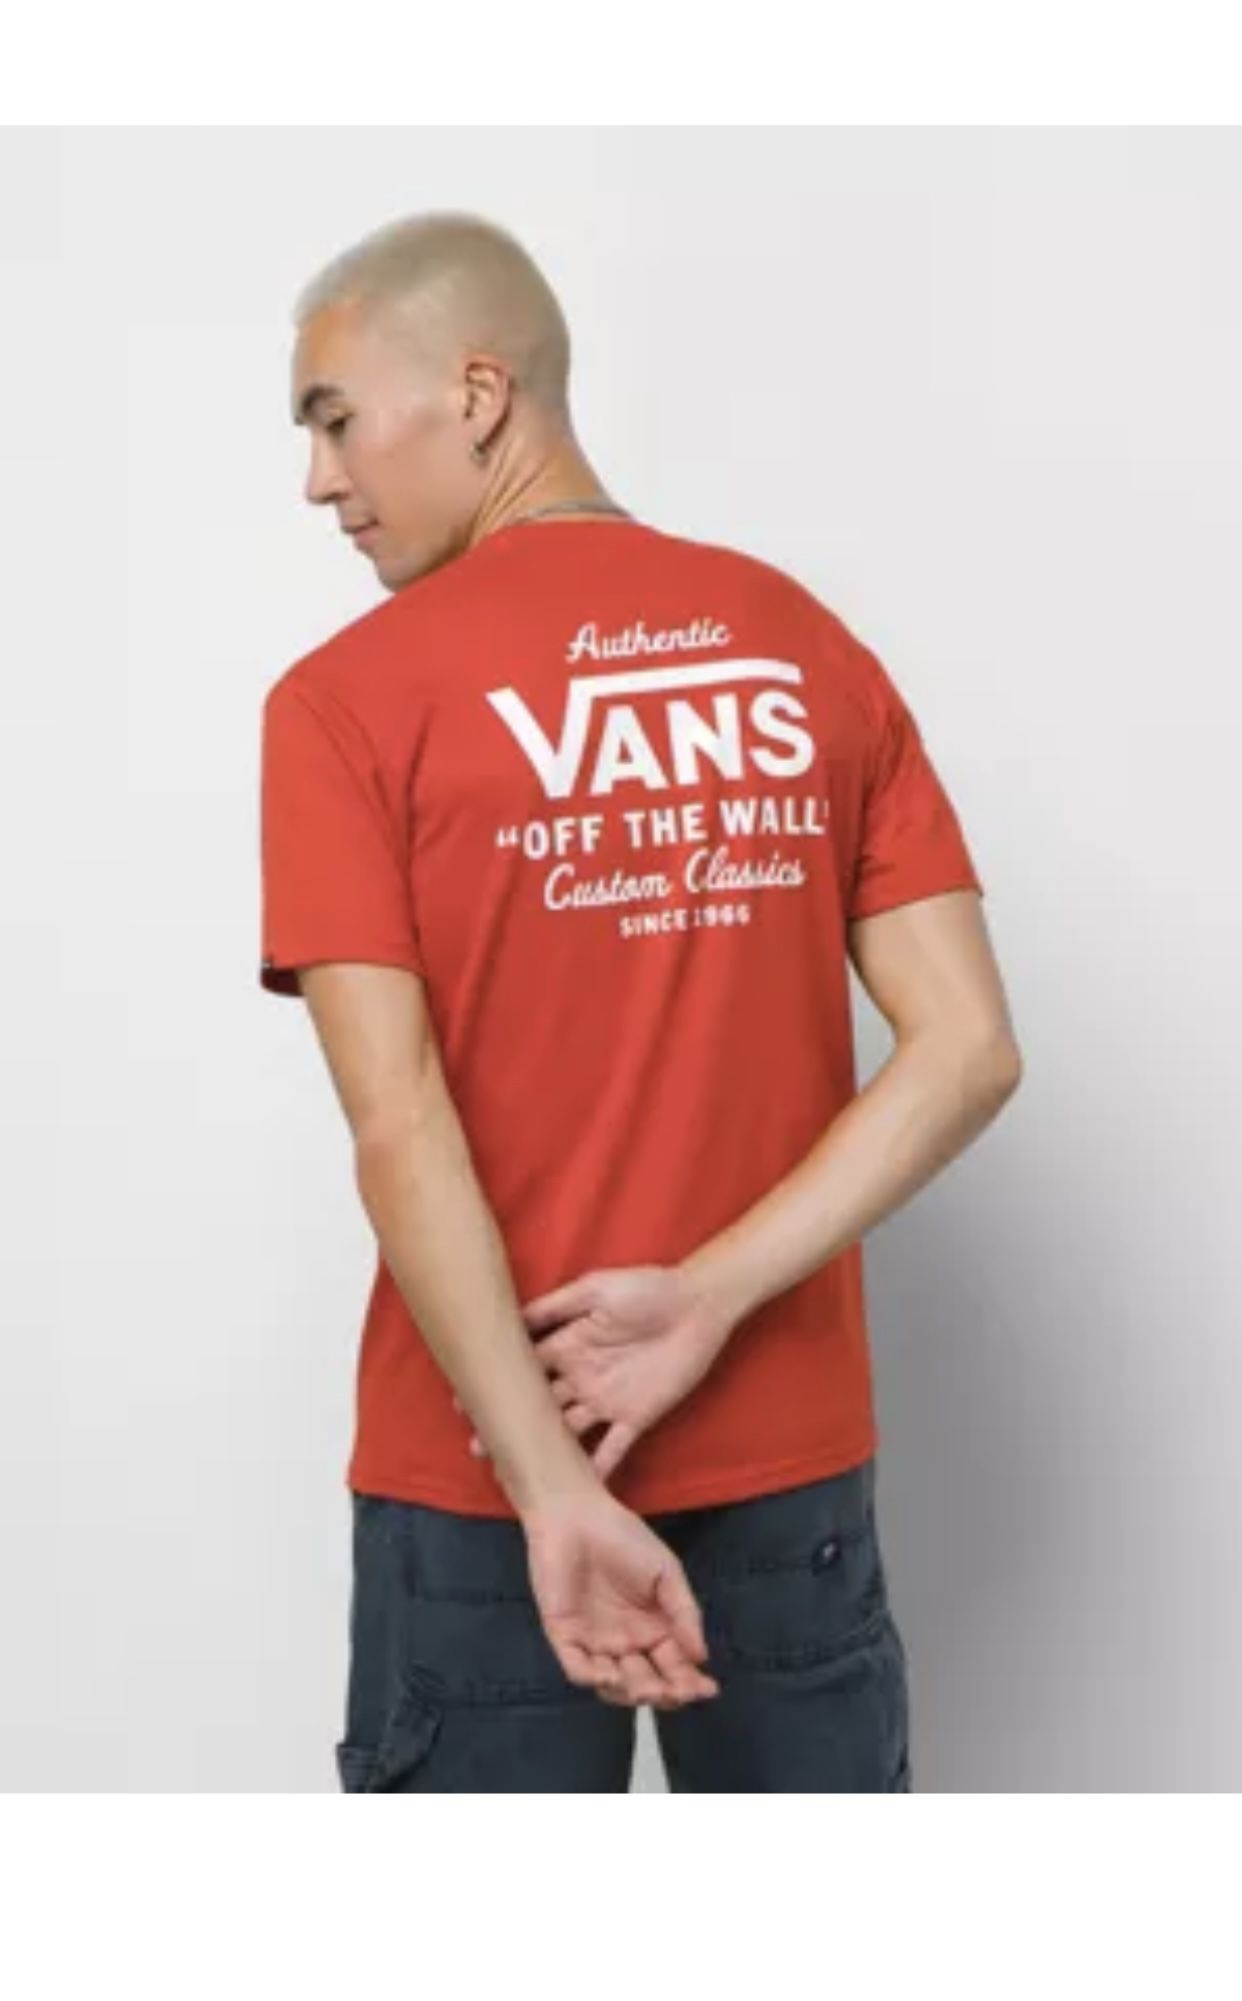 Vans Holder St Classic T Shirt Size M